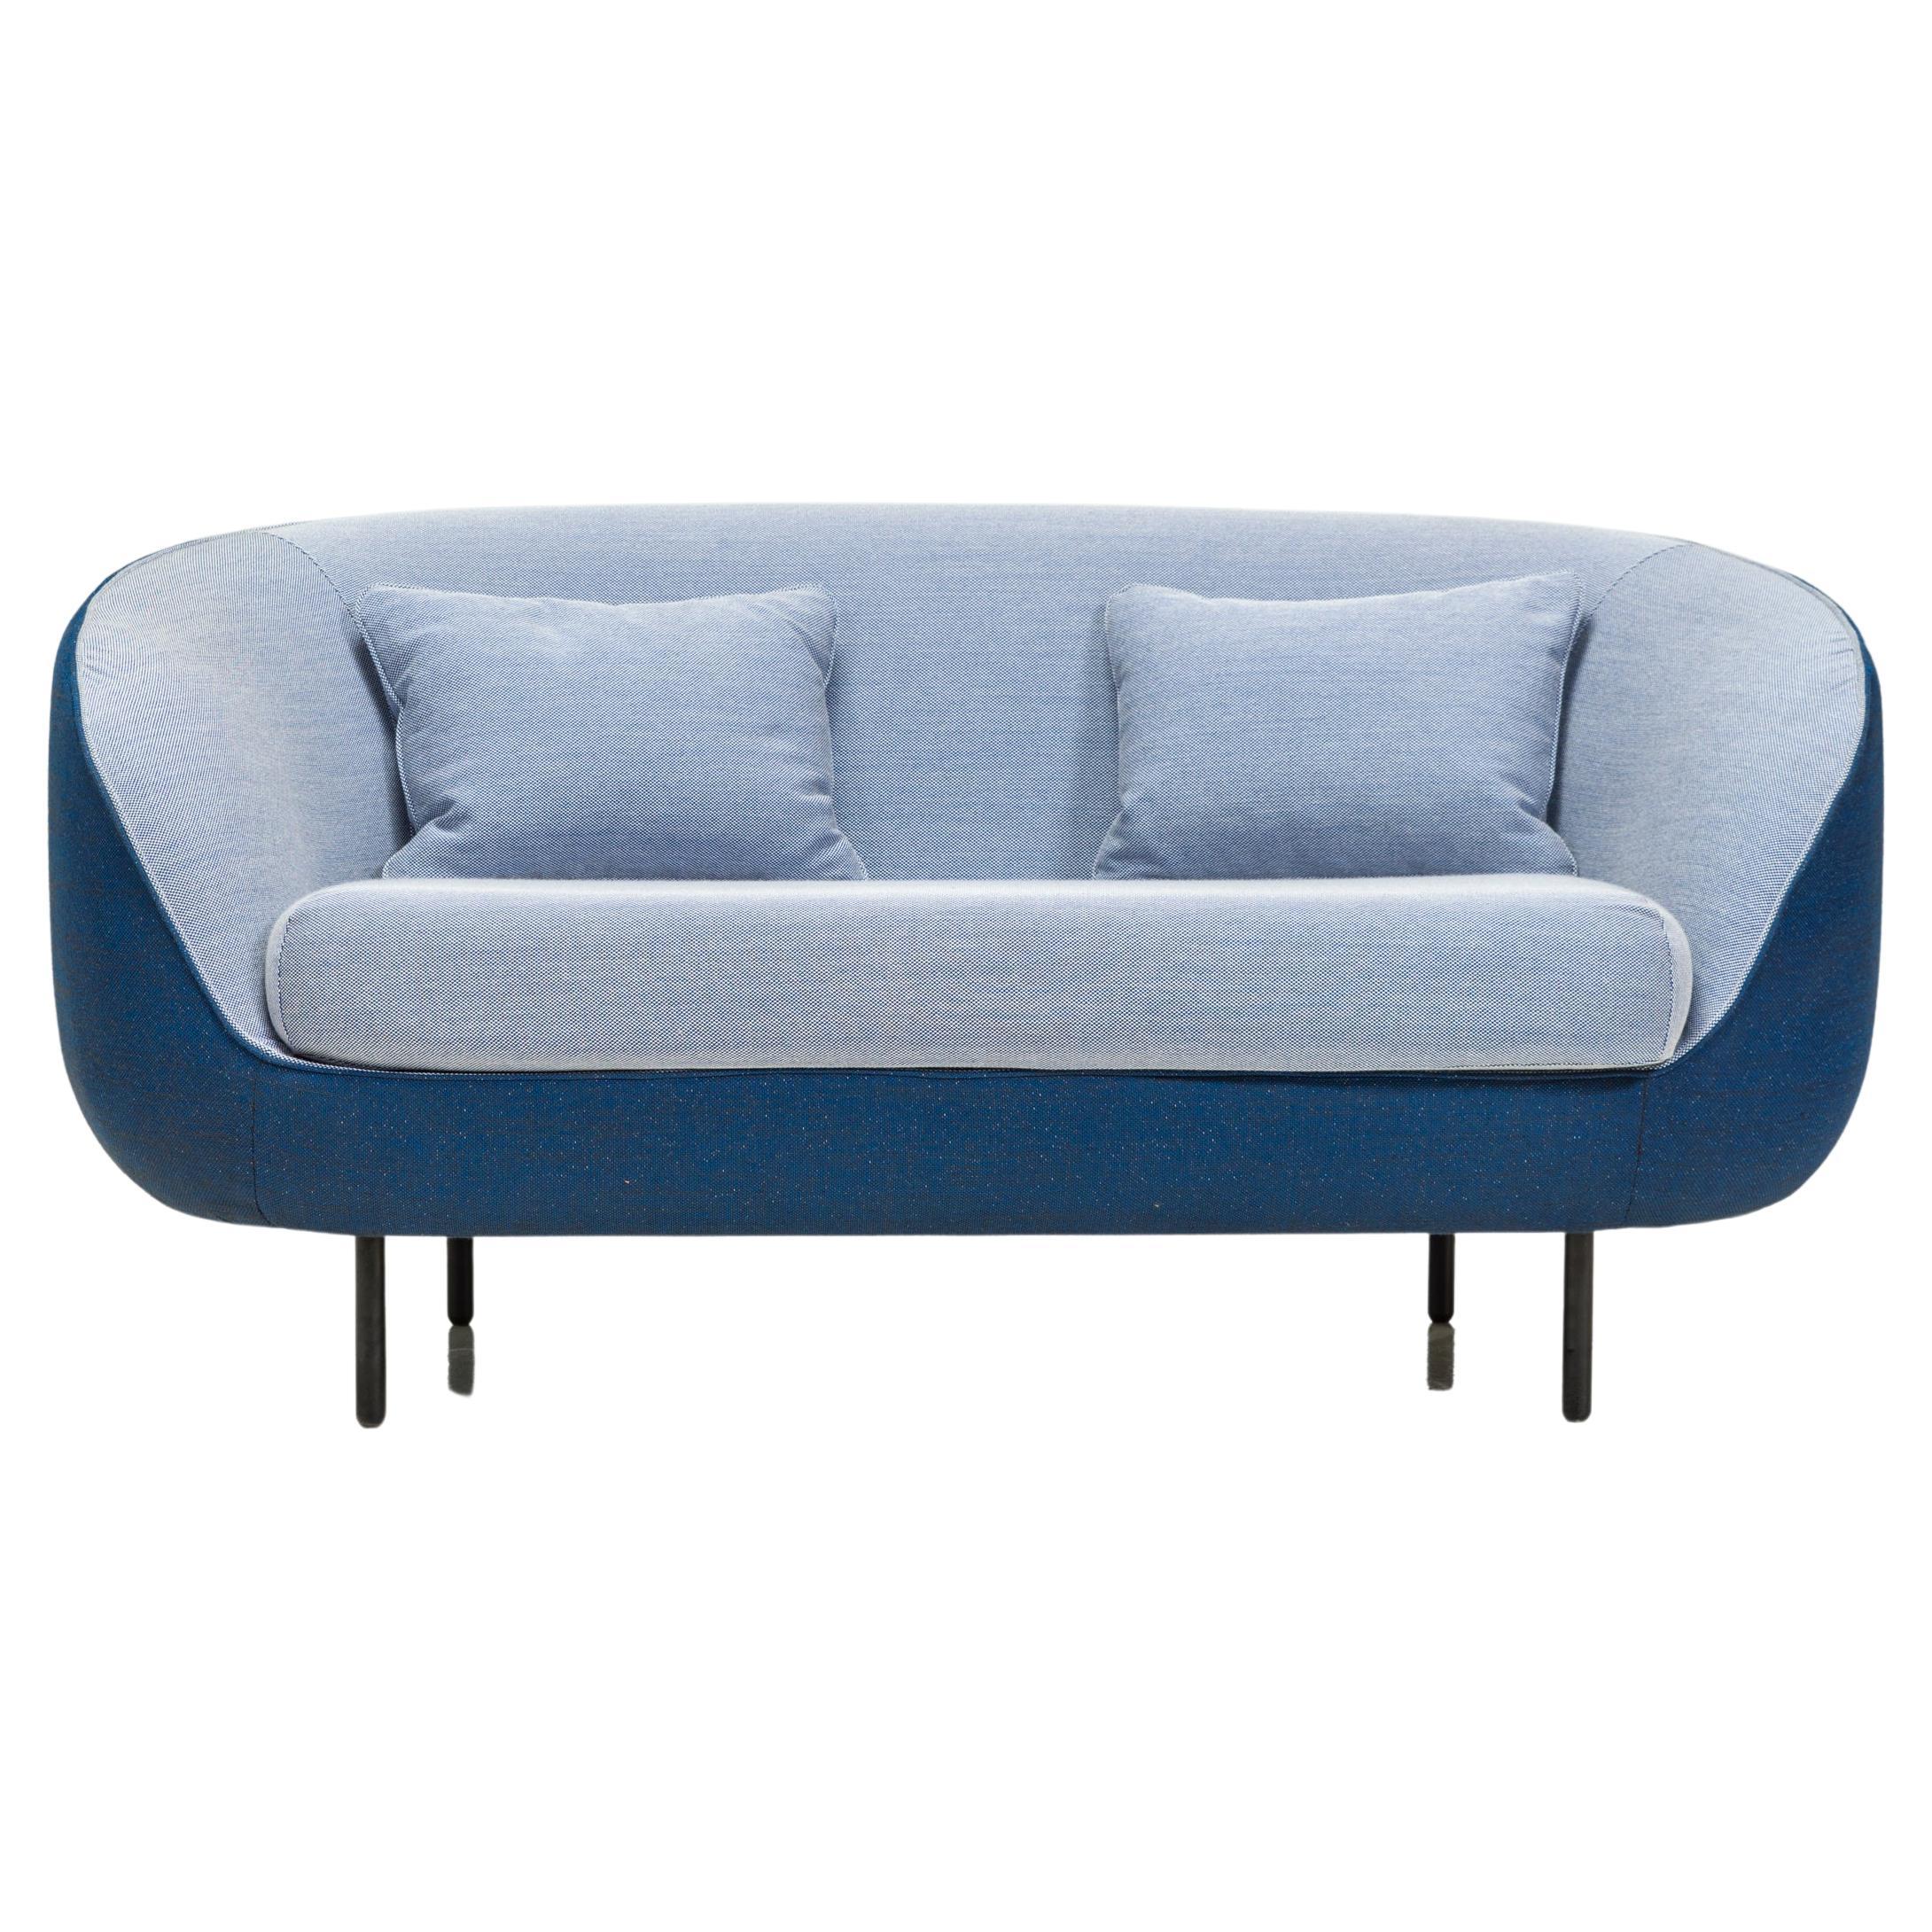 Fredericia by GamFratesi Zweifarbiges Haiku 2 Seater-Sofa aus blauem Stoff mit zwei Trägern, 2018